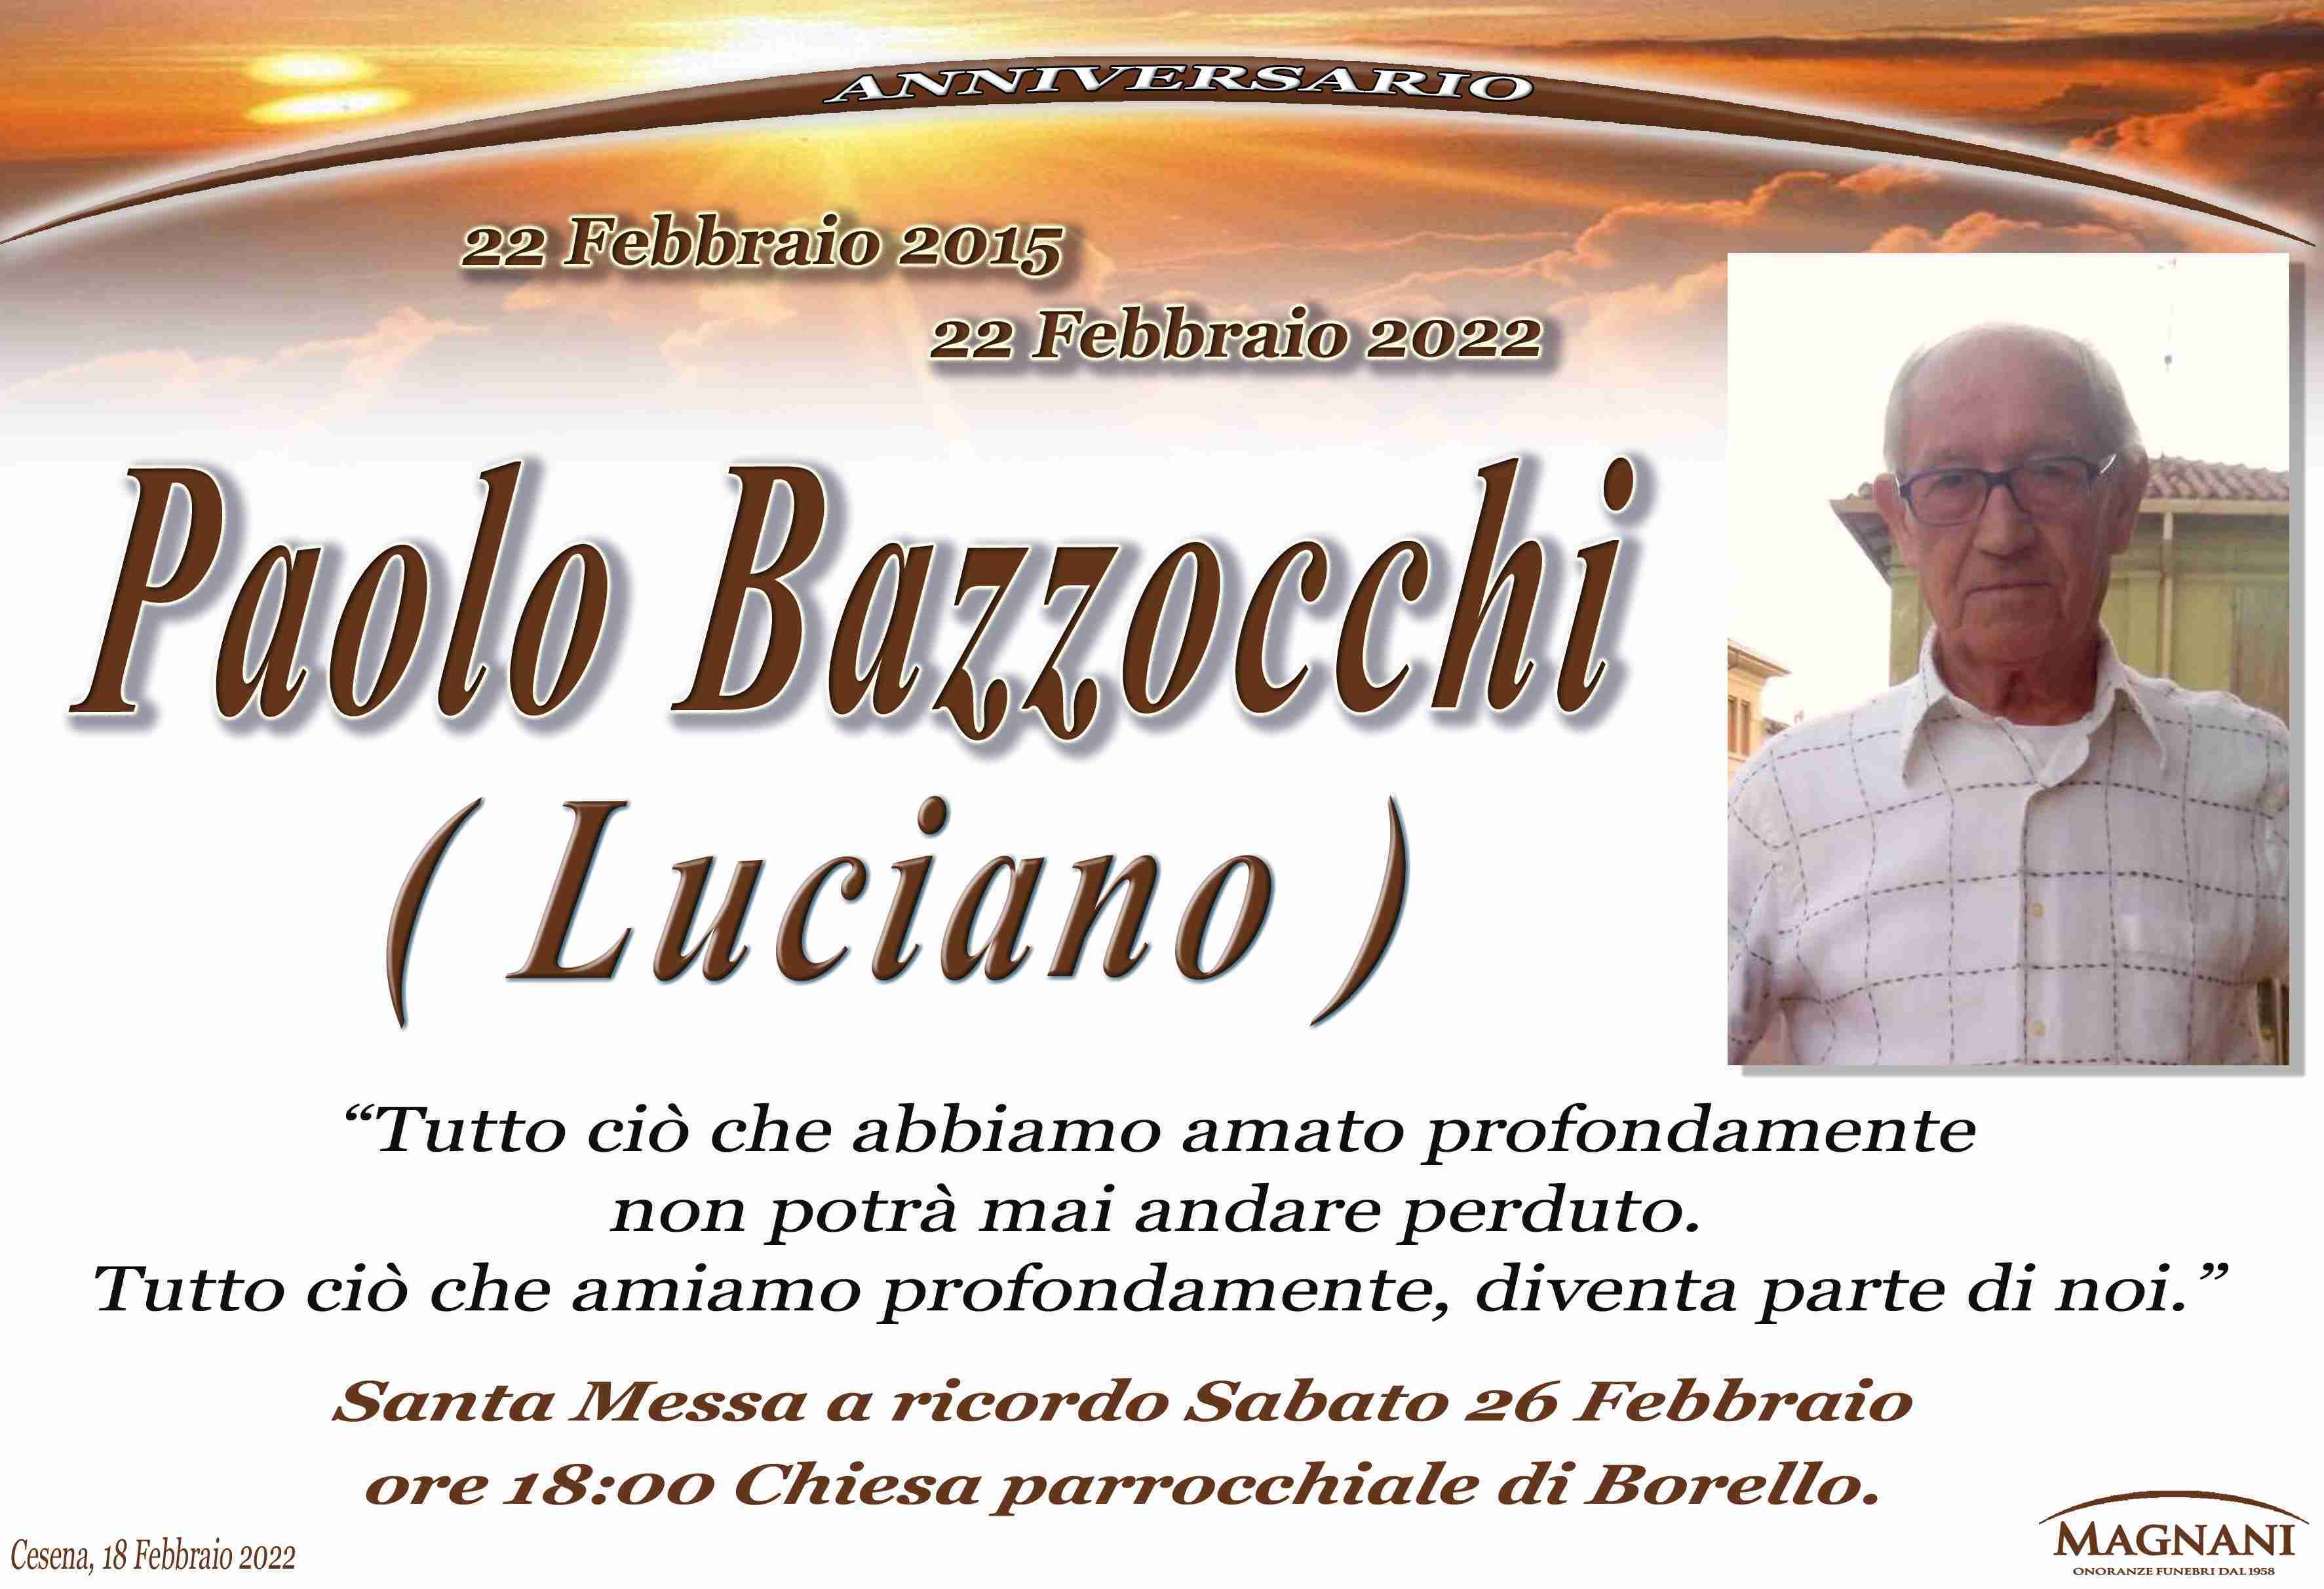 Paolo Bazzocchi